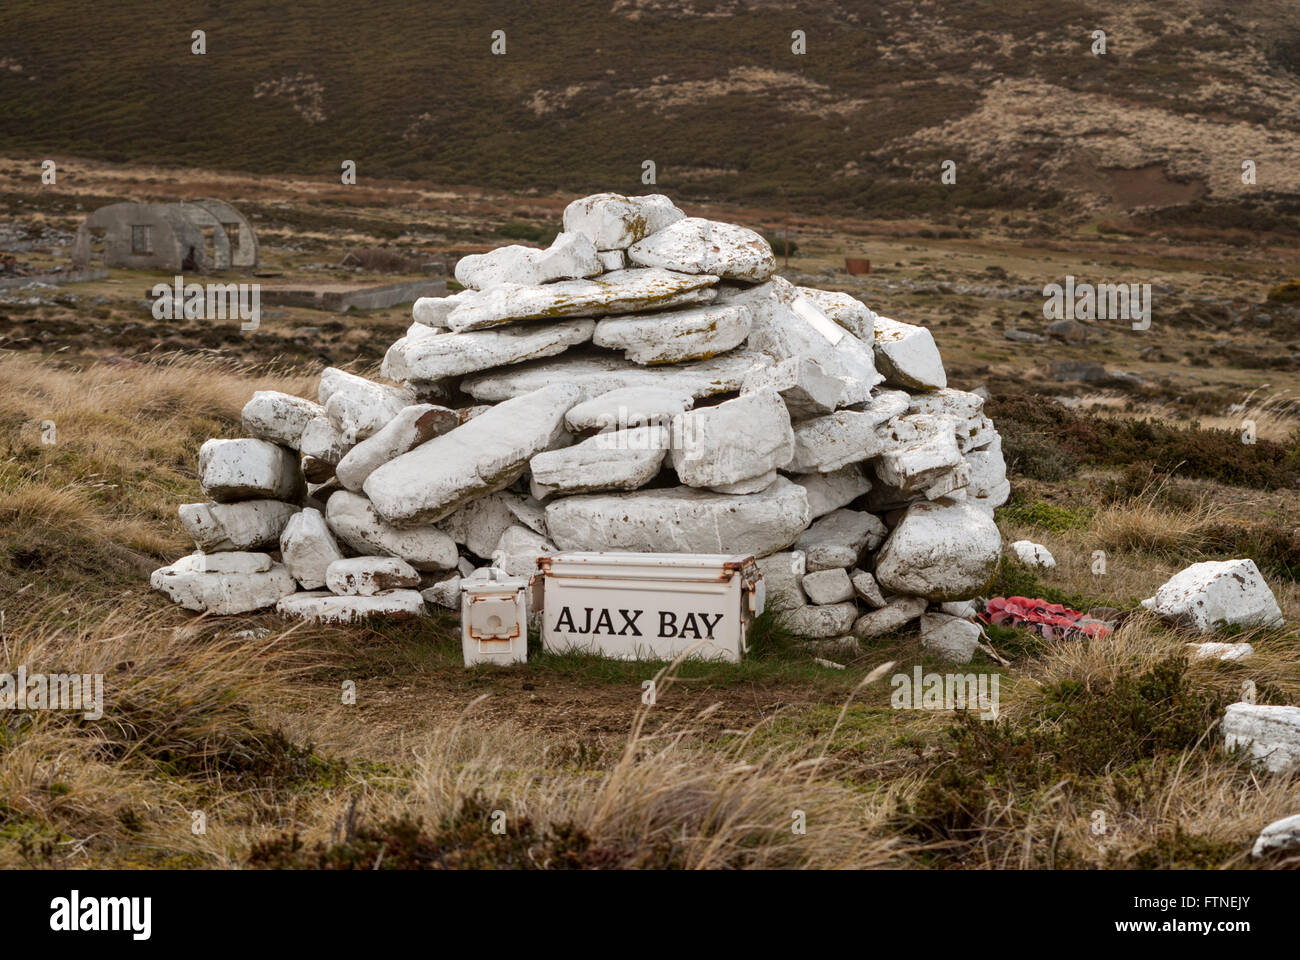 Bahía Ajax mojón conmemorativo en Ajax, la Bahía de San Carlos, el agua, la East Falkland, Islas Malvinas, América del Sur Foto de stock